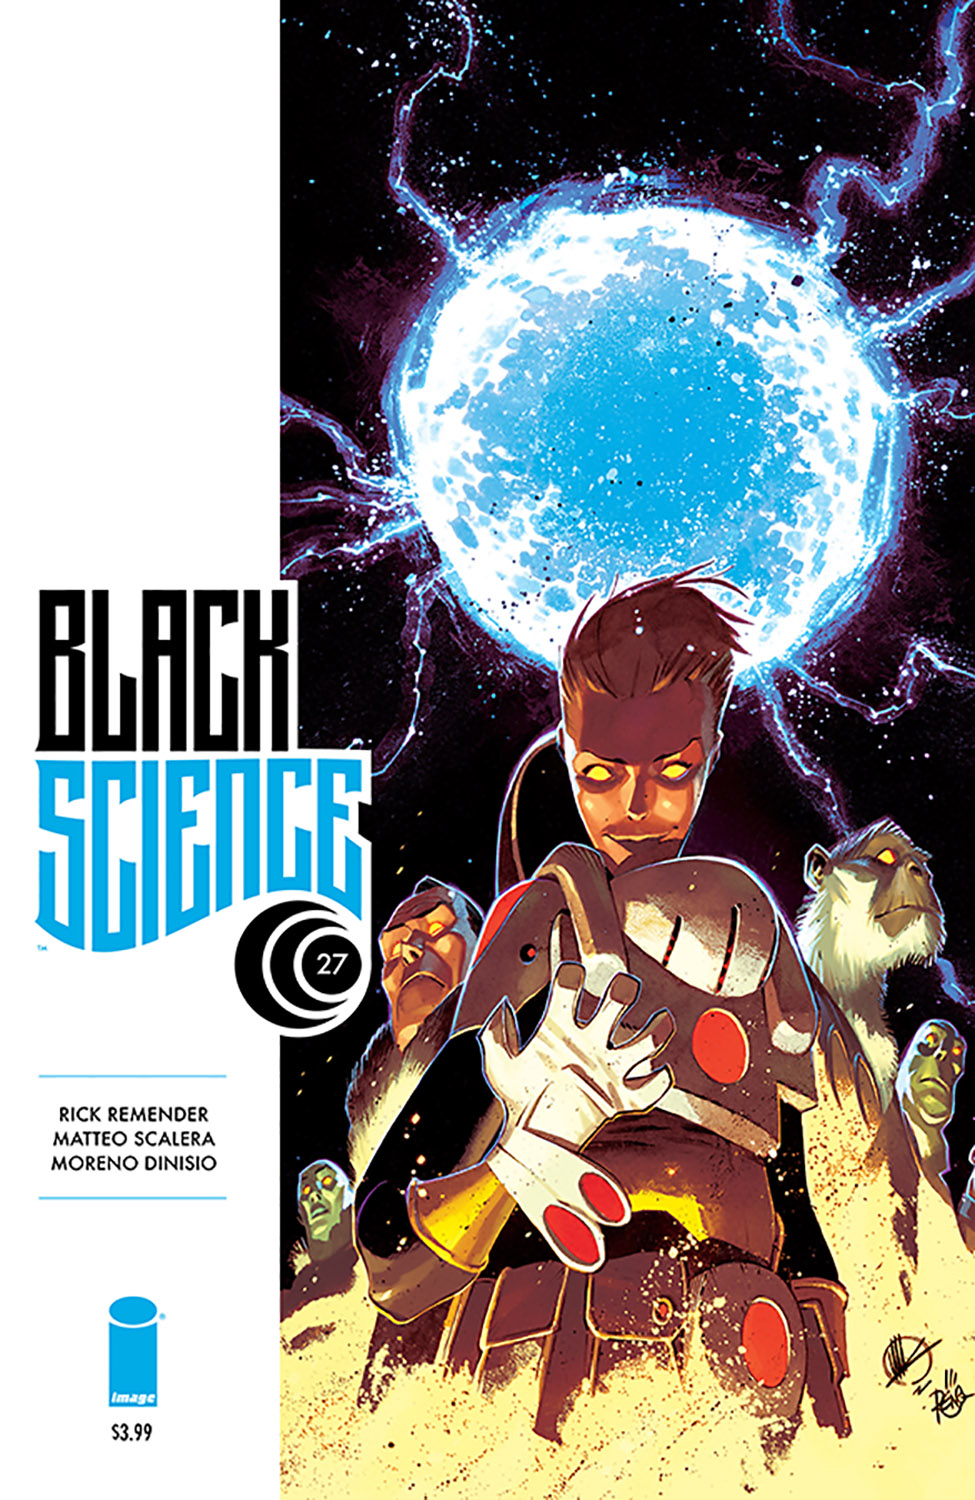 BLACK SCIENCE #27 (MR)